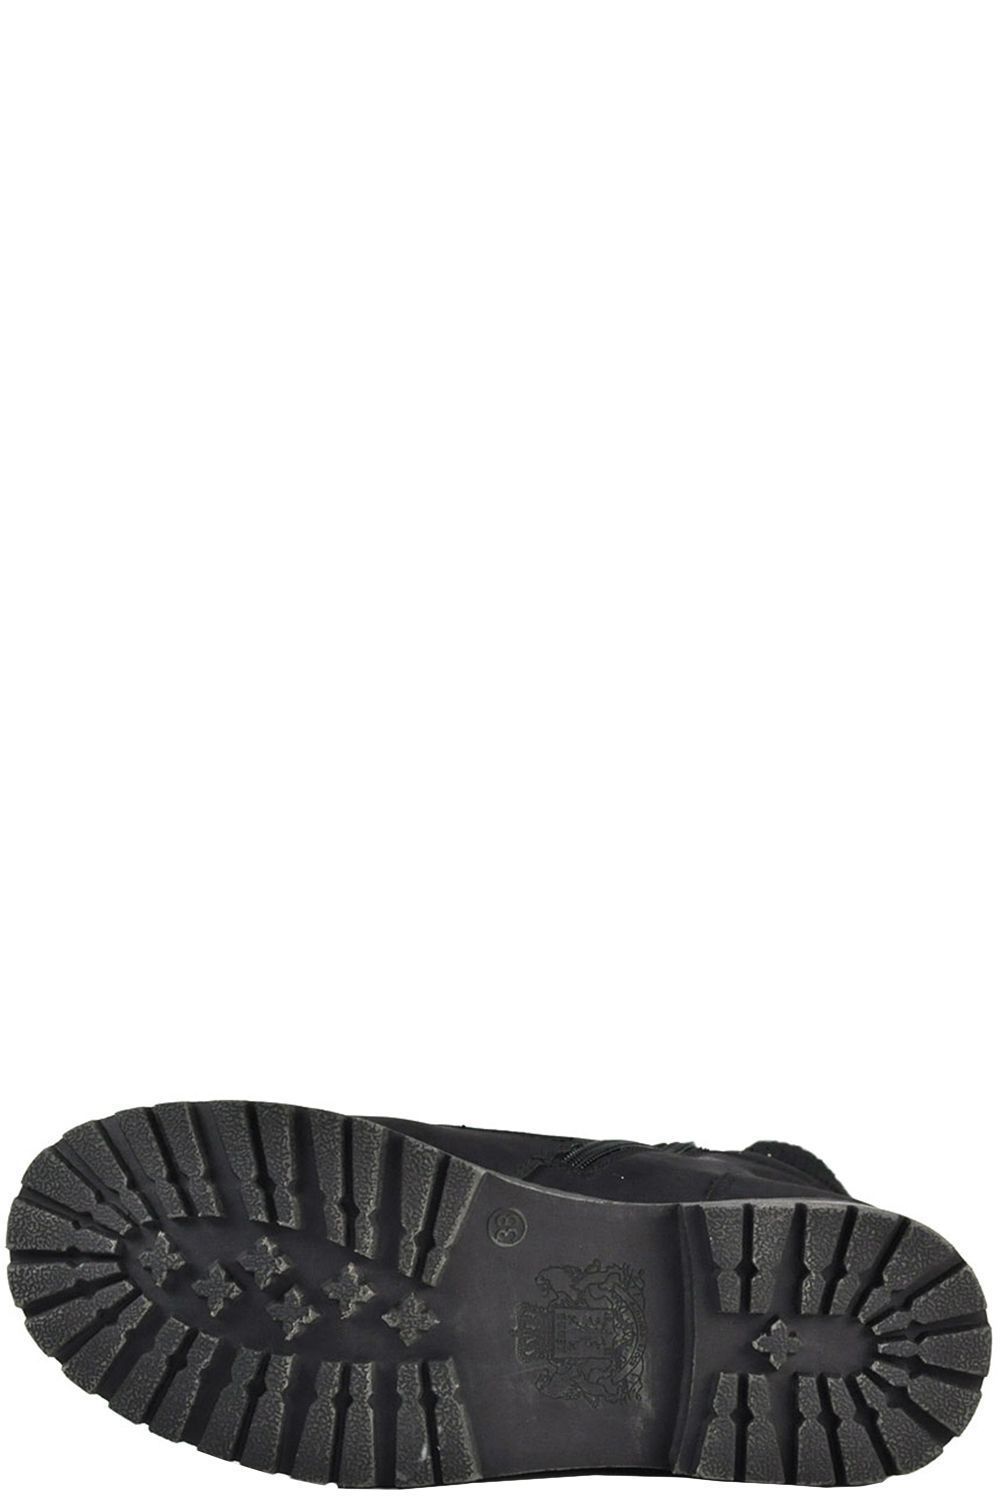 Ботинки Keddo, размер 40, цвет черный 578609/01-01 - фото 2